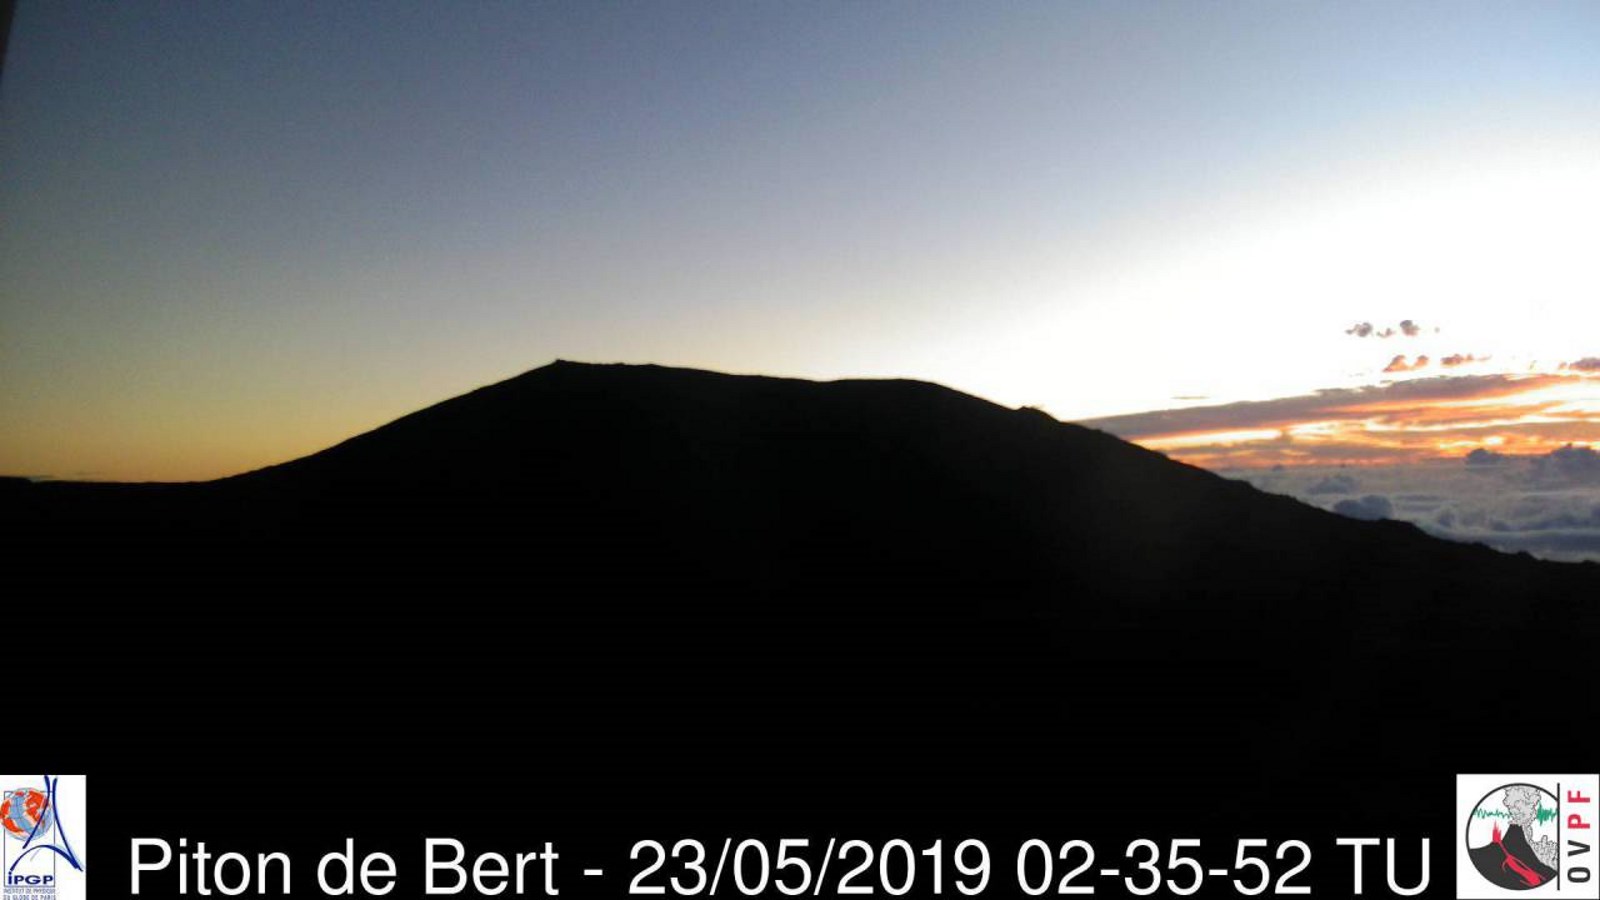 06h35 ce matin. Piton de Bert/Volcan. Crédit image: Météo Réunion.